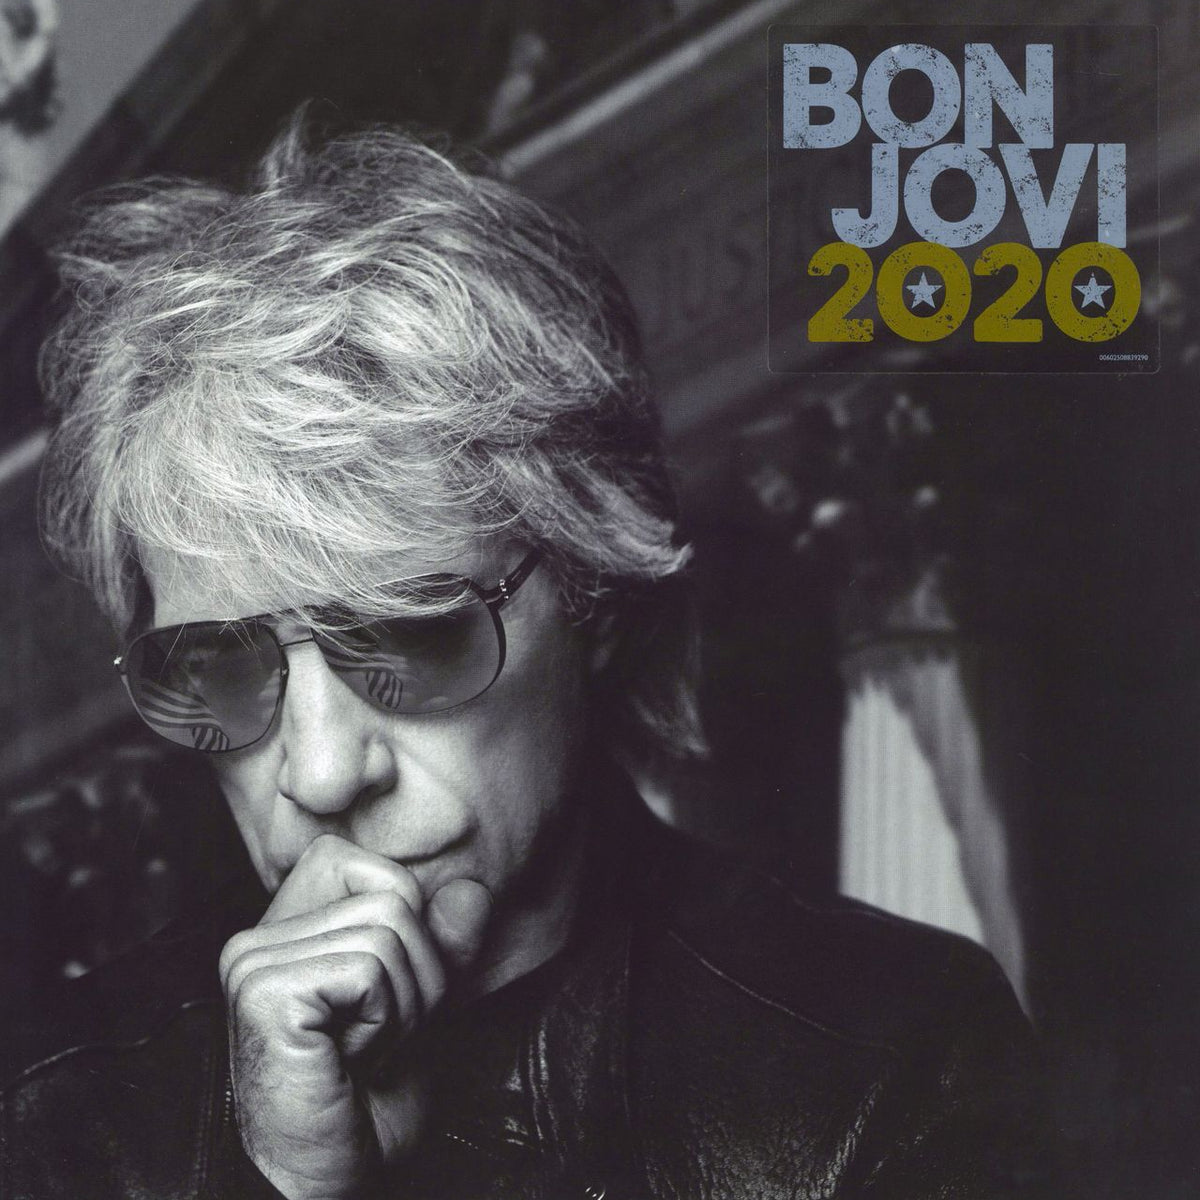 Bon Jovi Bon Jovi: 2020 - Gold Vinyl UK 2-LP vinyl set — RareVinyl 